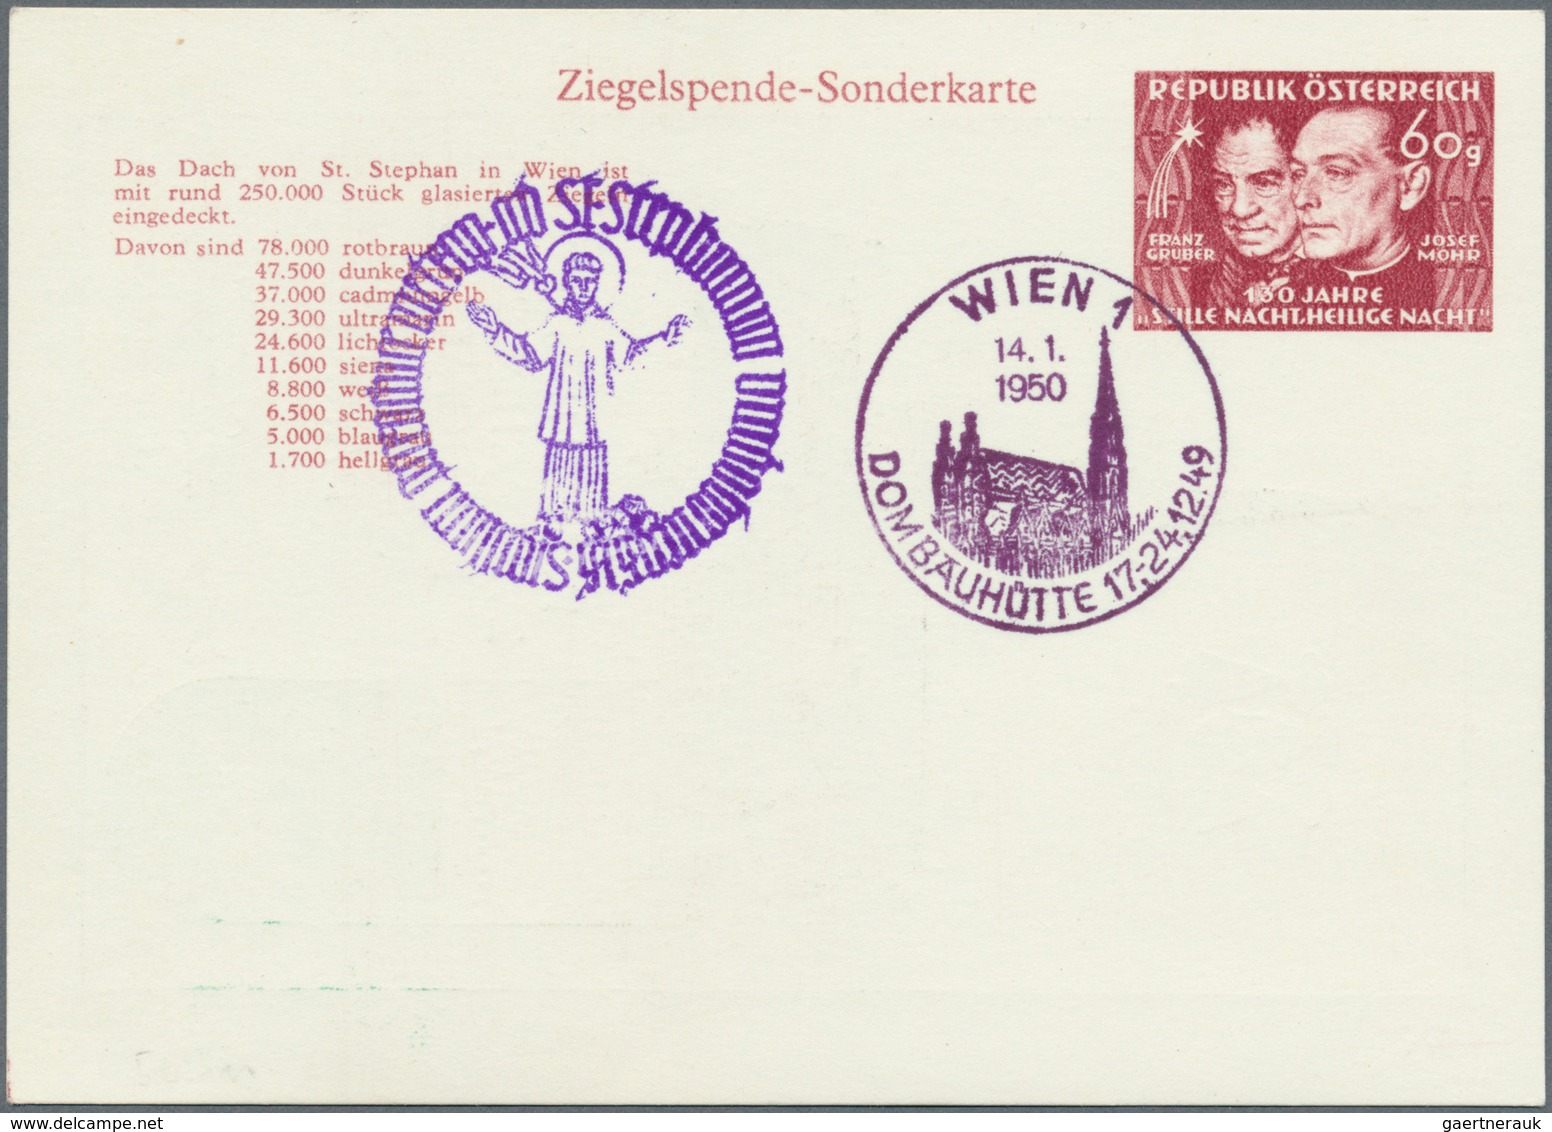 Österreich - Privatganzsachen: 1948/1974, gehaltvoller, nach verwendeten Wertstempeln sortierter Sam